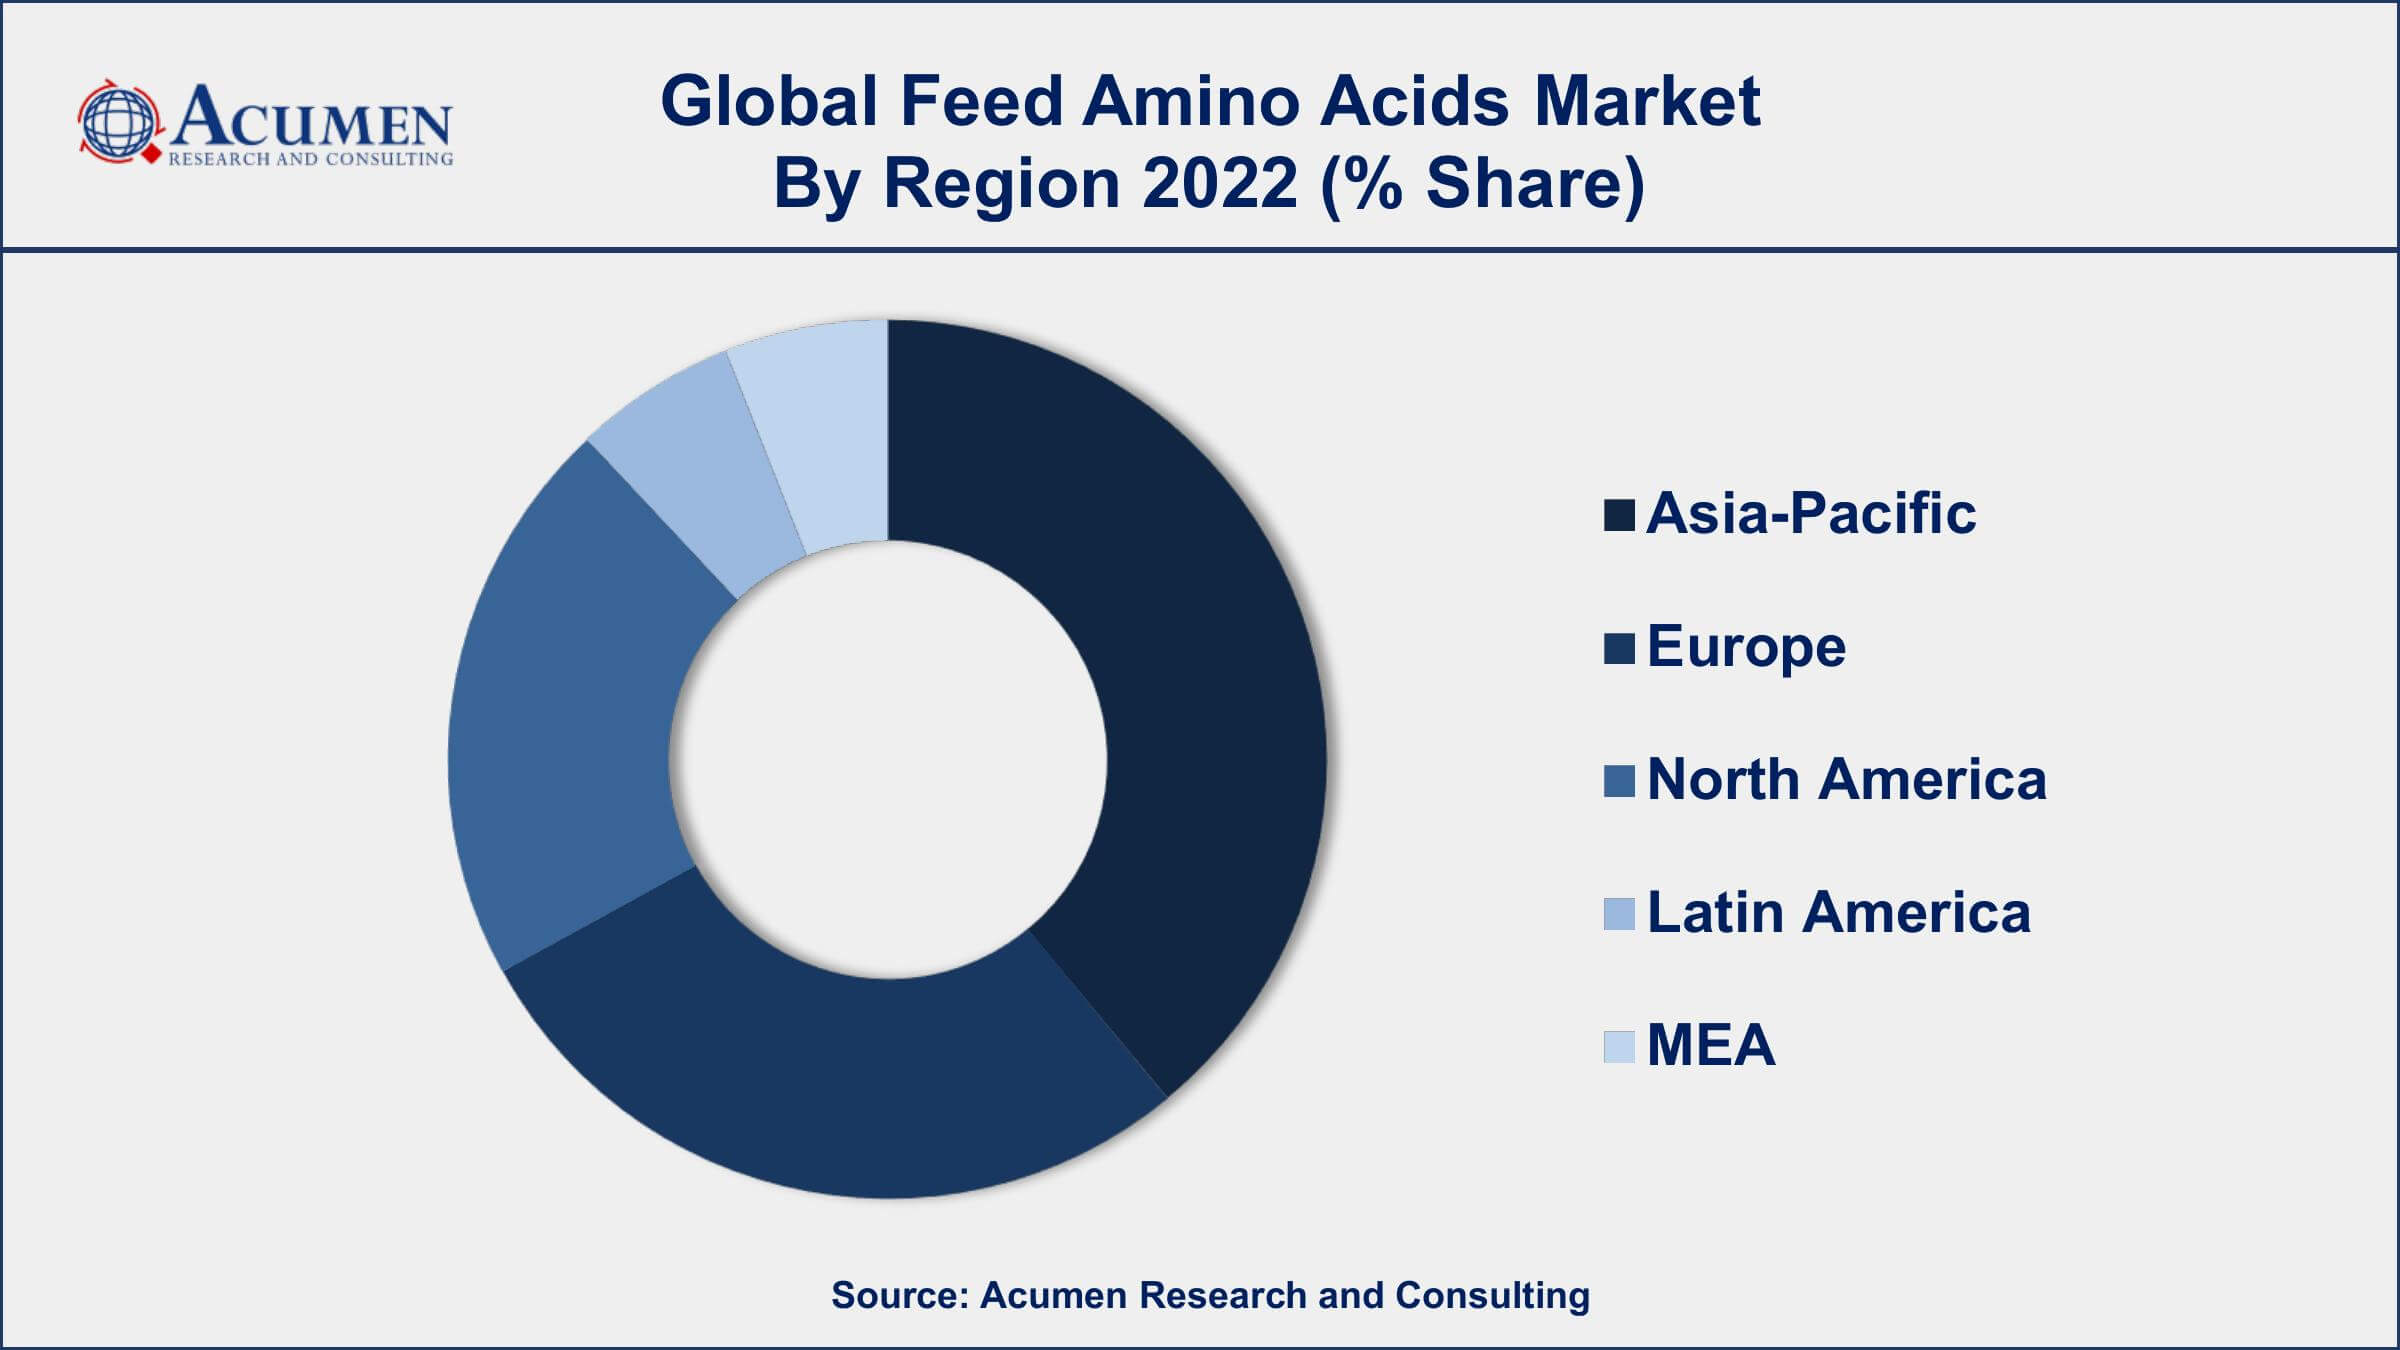 Feed Amino Acids Market Drivers